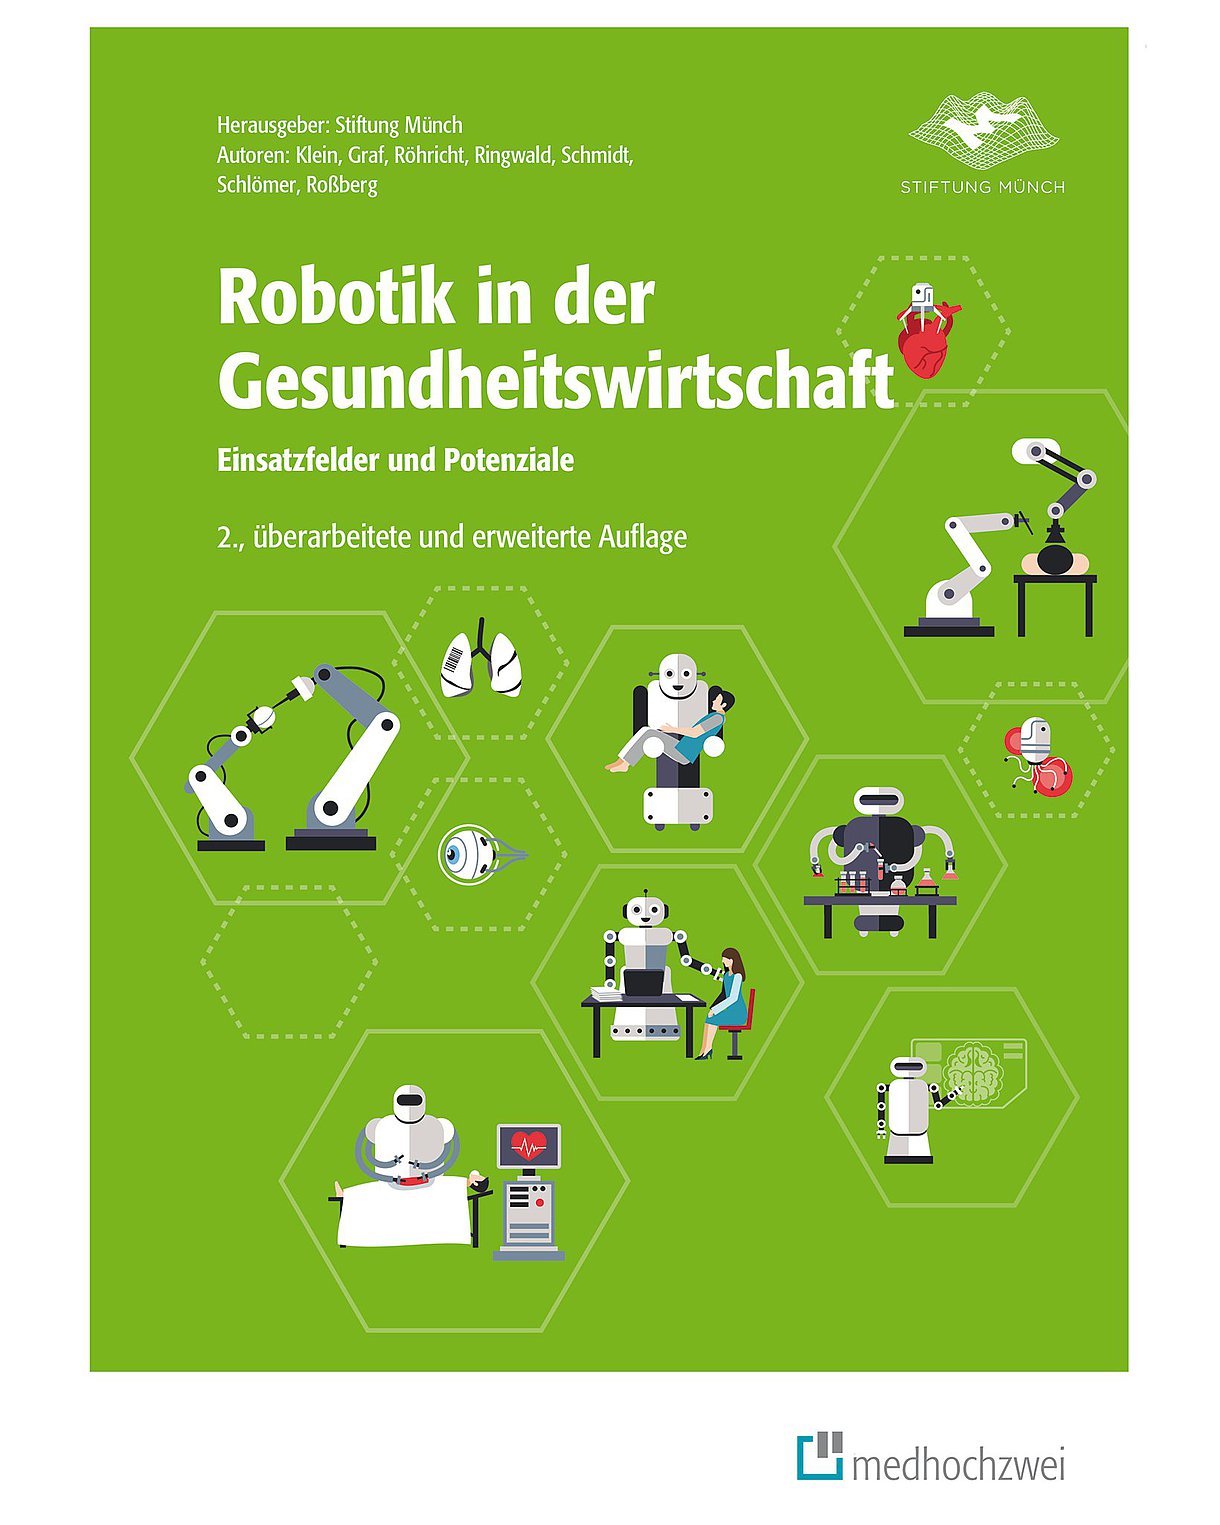 Cover des Buches "Robotik in der Gesundheitswirtschaft" in Grün mit kleinen Illustrationen von verschiedenen mediznischen Robotern in Waben